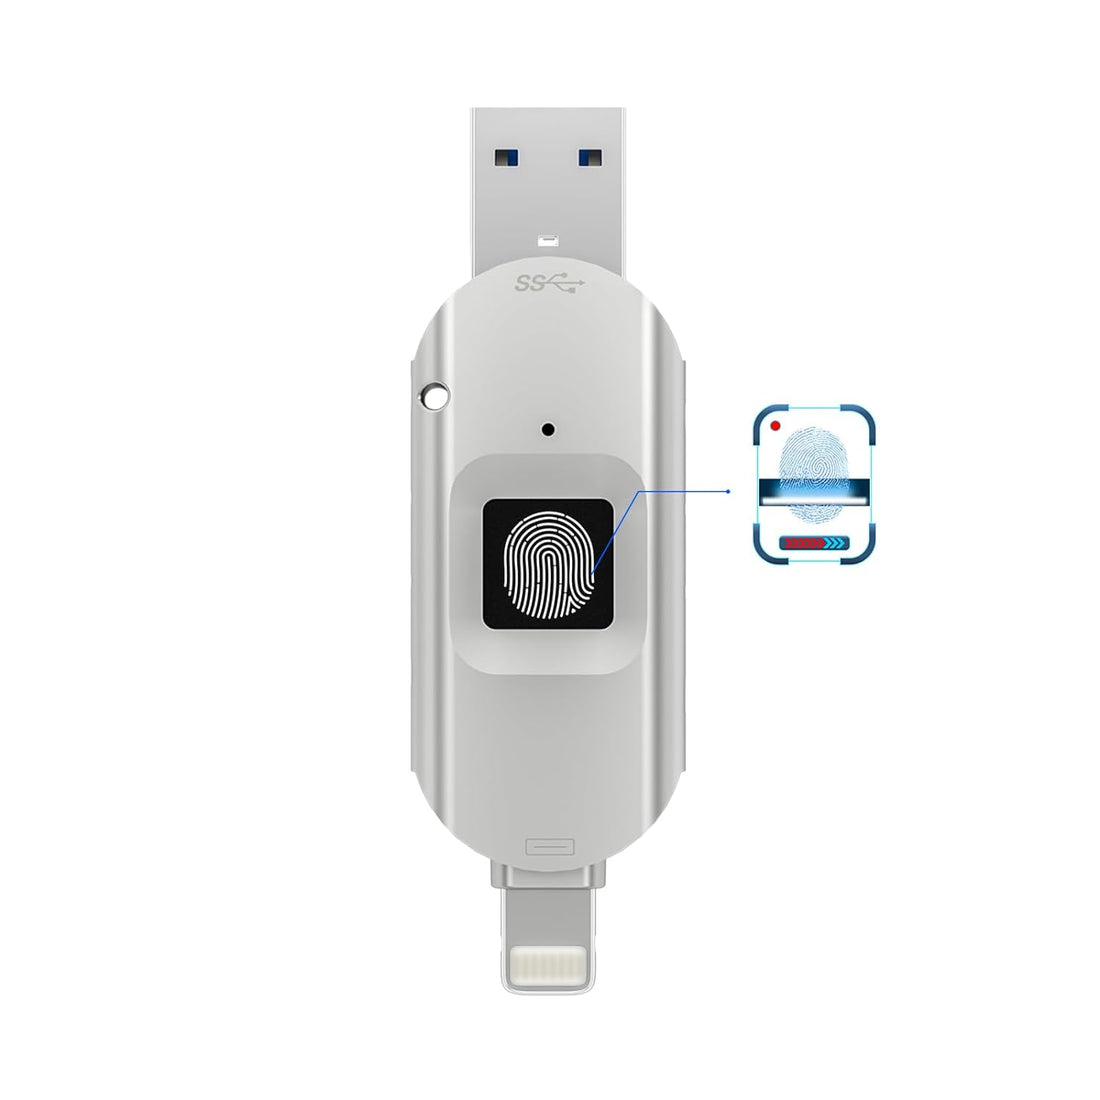 USB Flash Drive 128GB USB Flash Drive 2 in1 Encrypted USB Drive External Storage Flash Drive for iPhone/iPad/iPadmini/Mac/PC